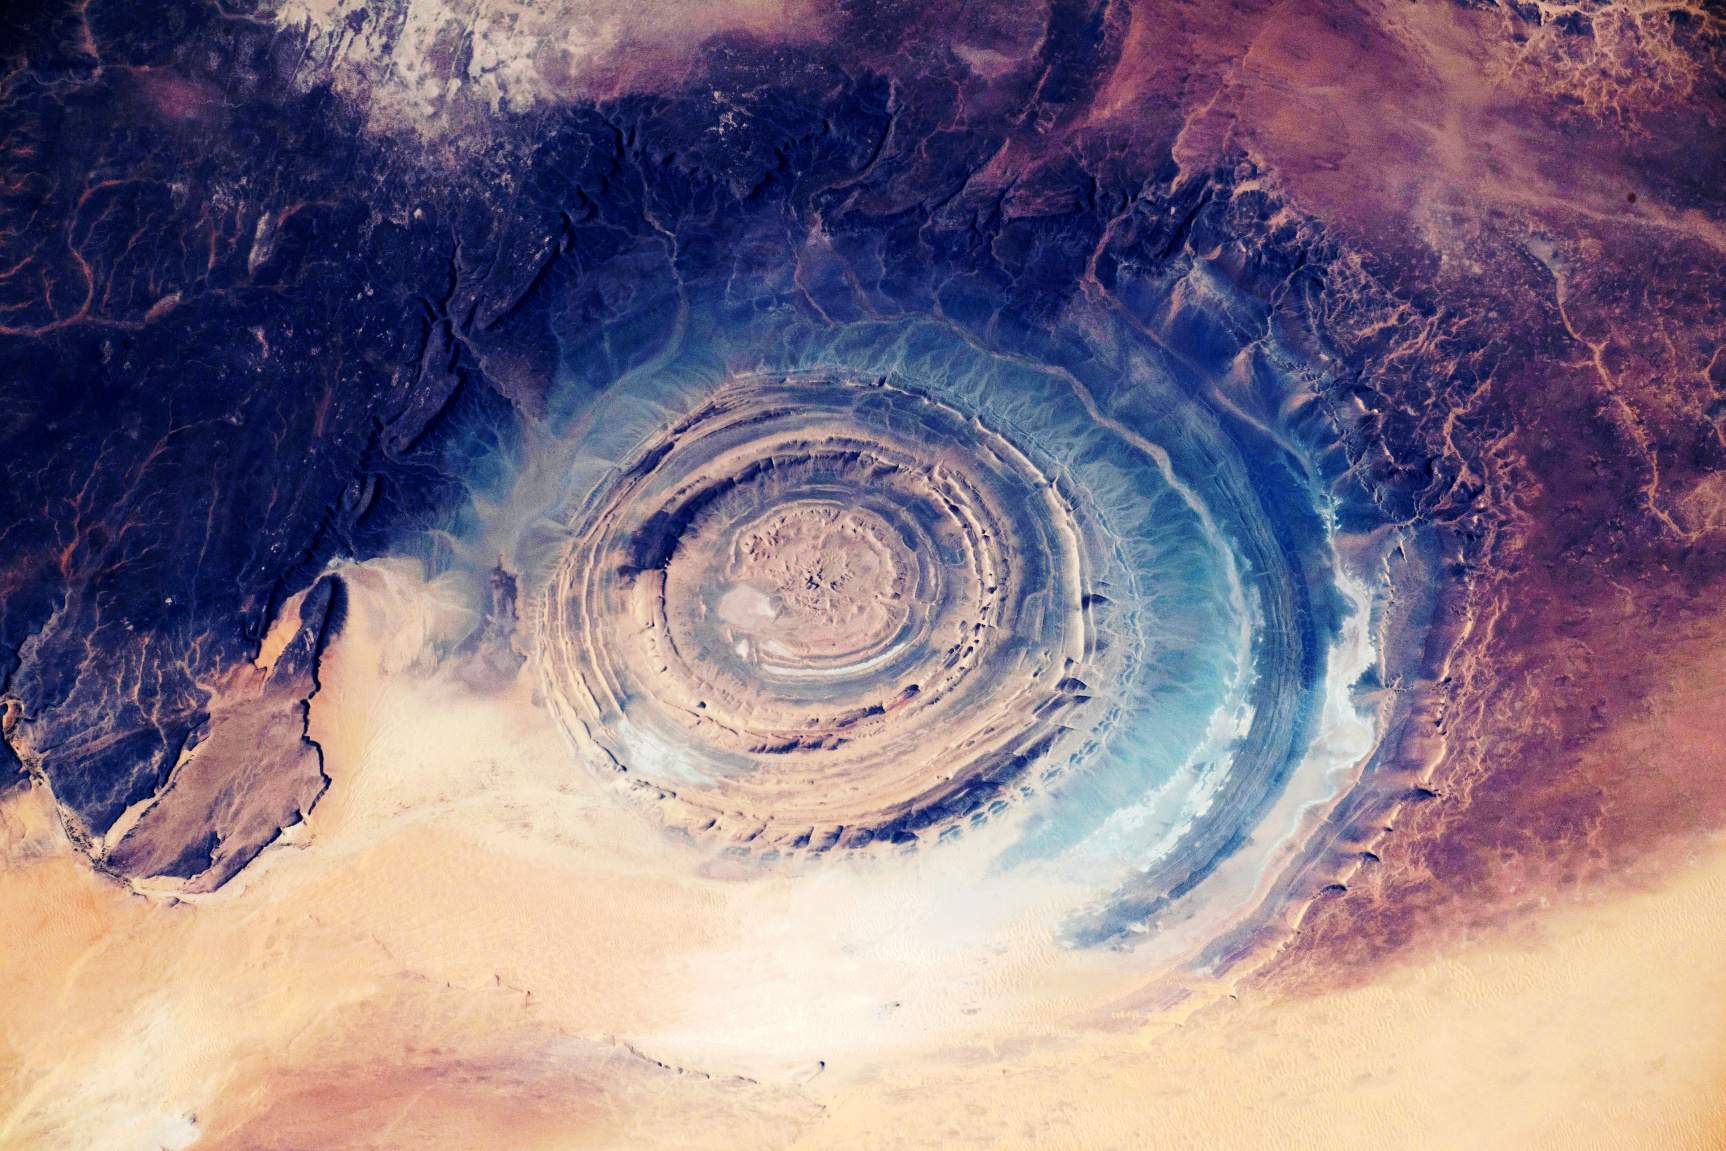 Richat-structuur: Is dit Atlantis, in het volle zicht verstopt in de Sahara? 4